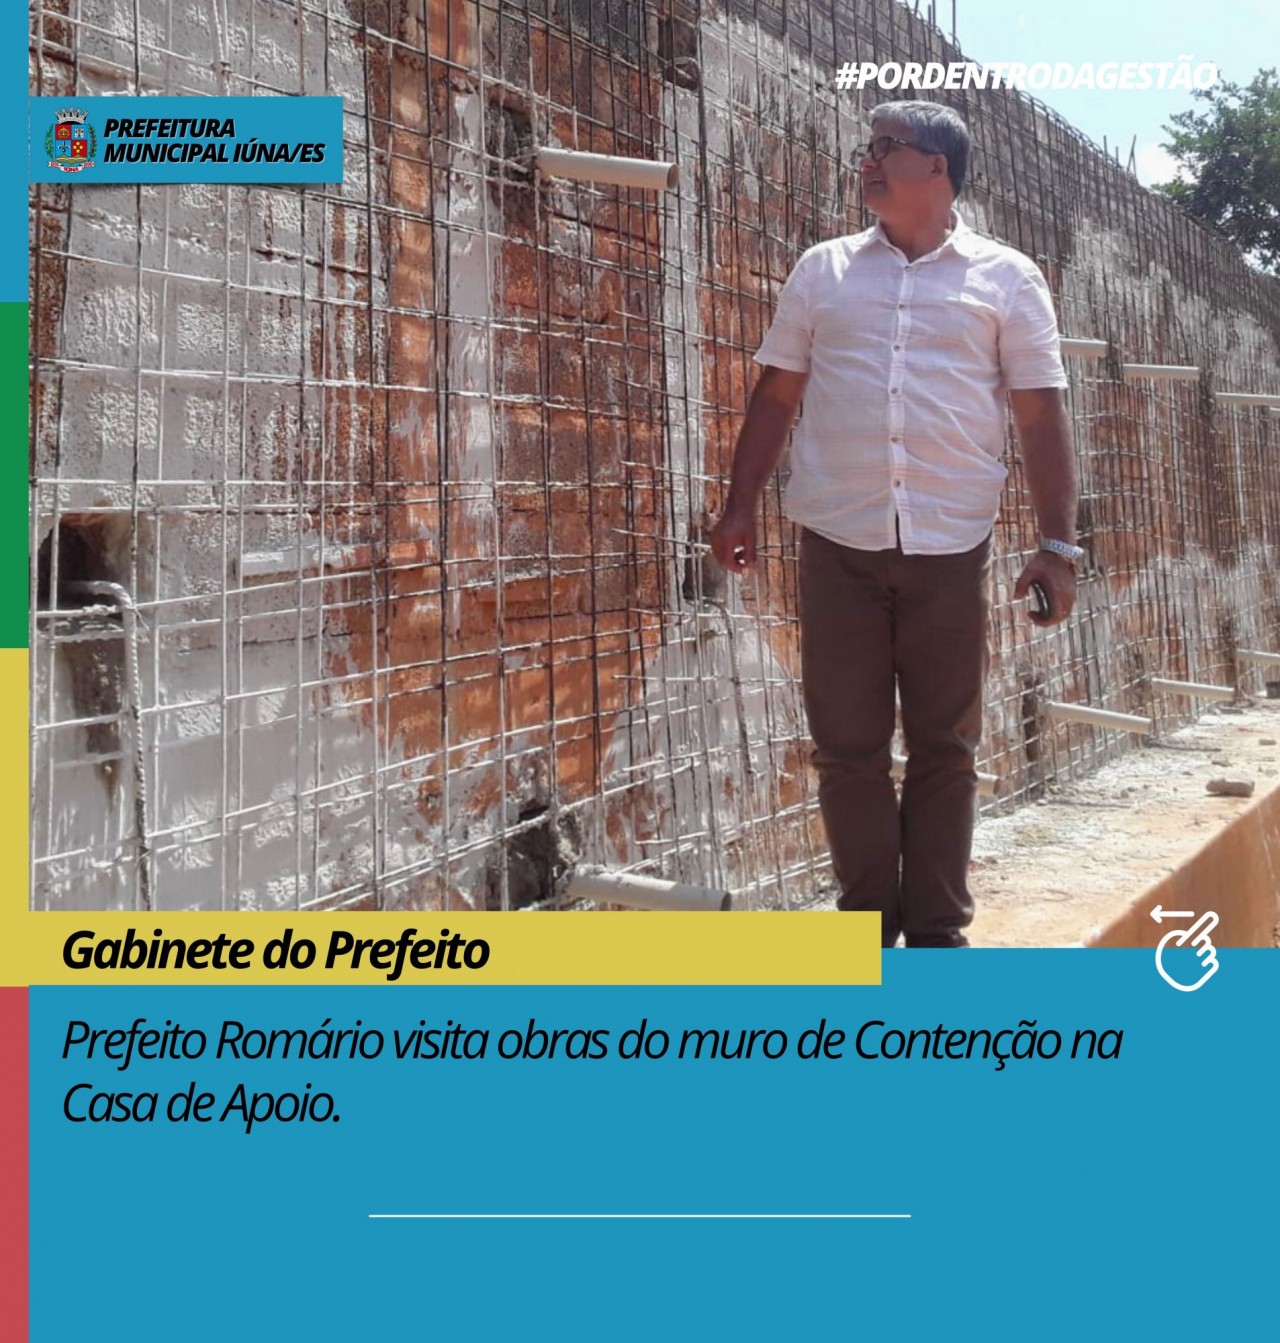 Prefeito Romário visita obras do muro de Contenção na Casa de Apoio